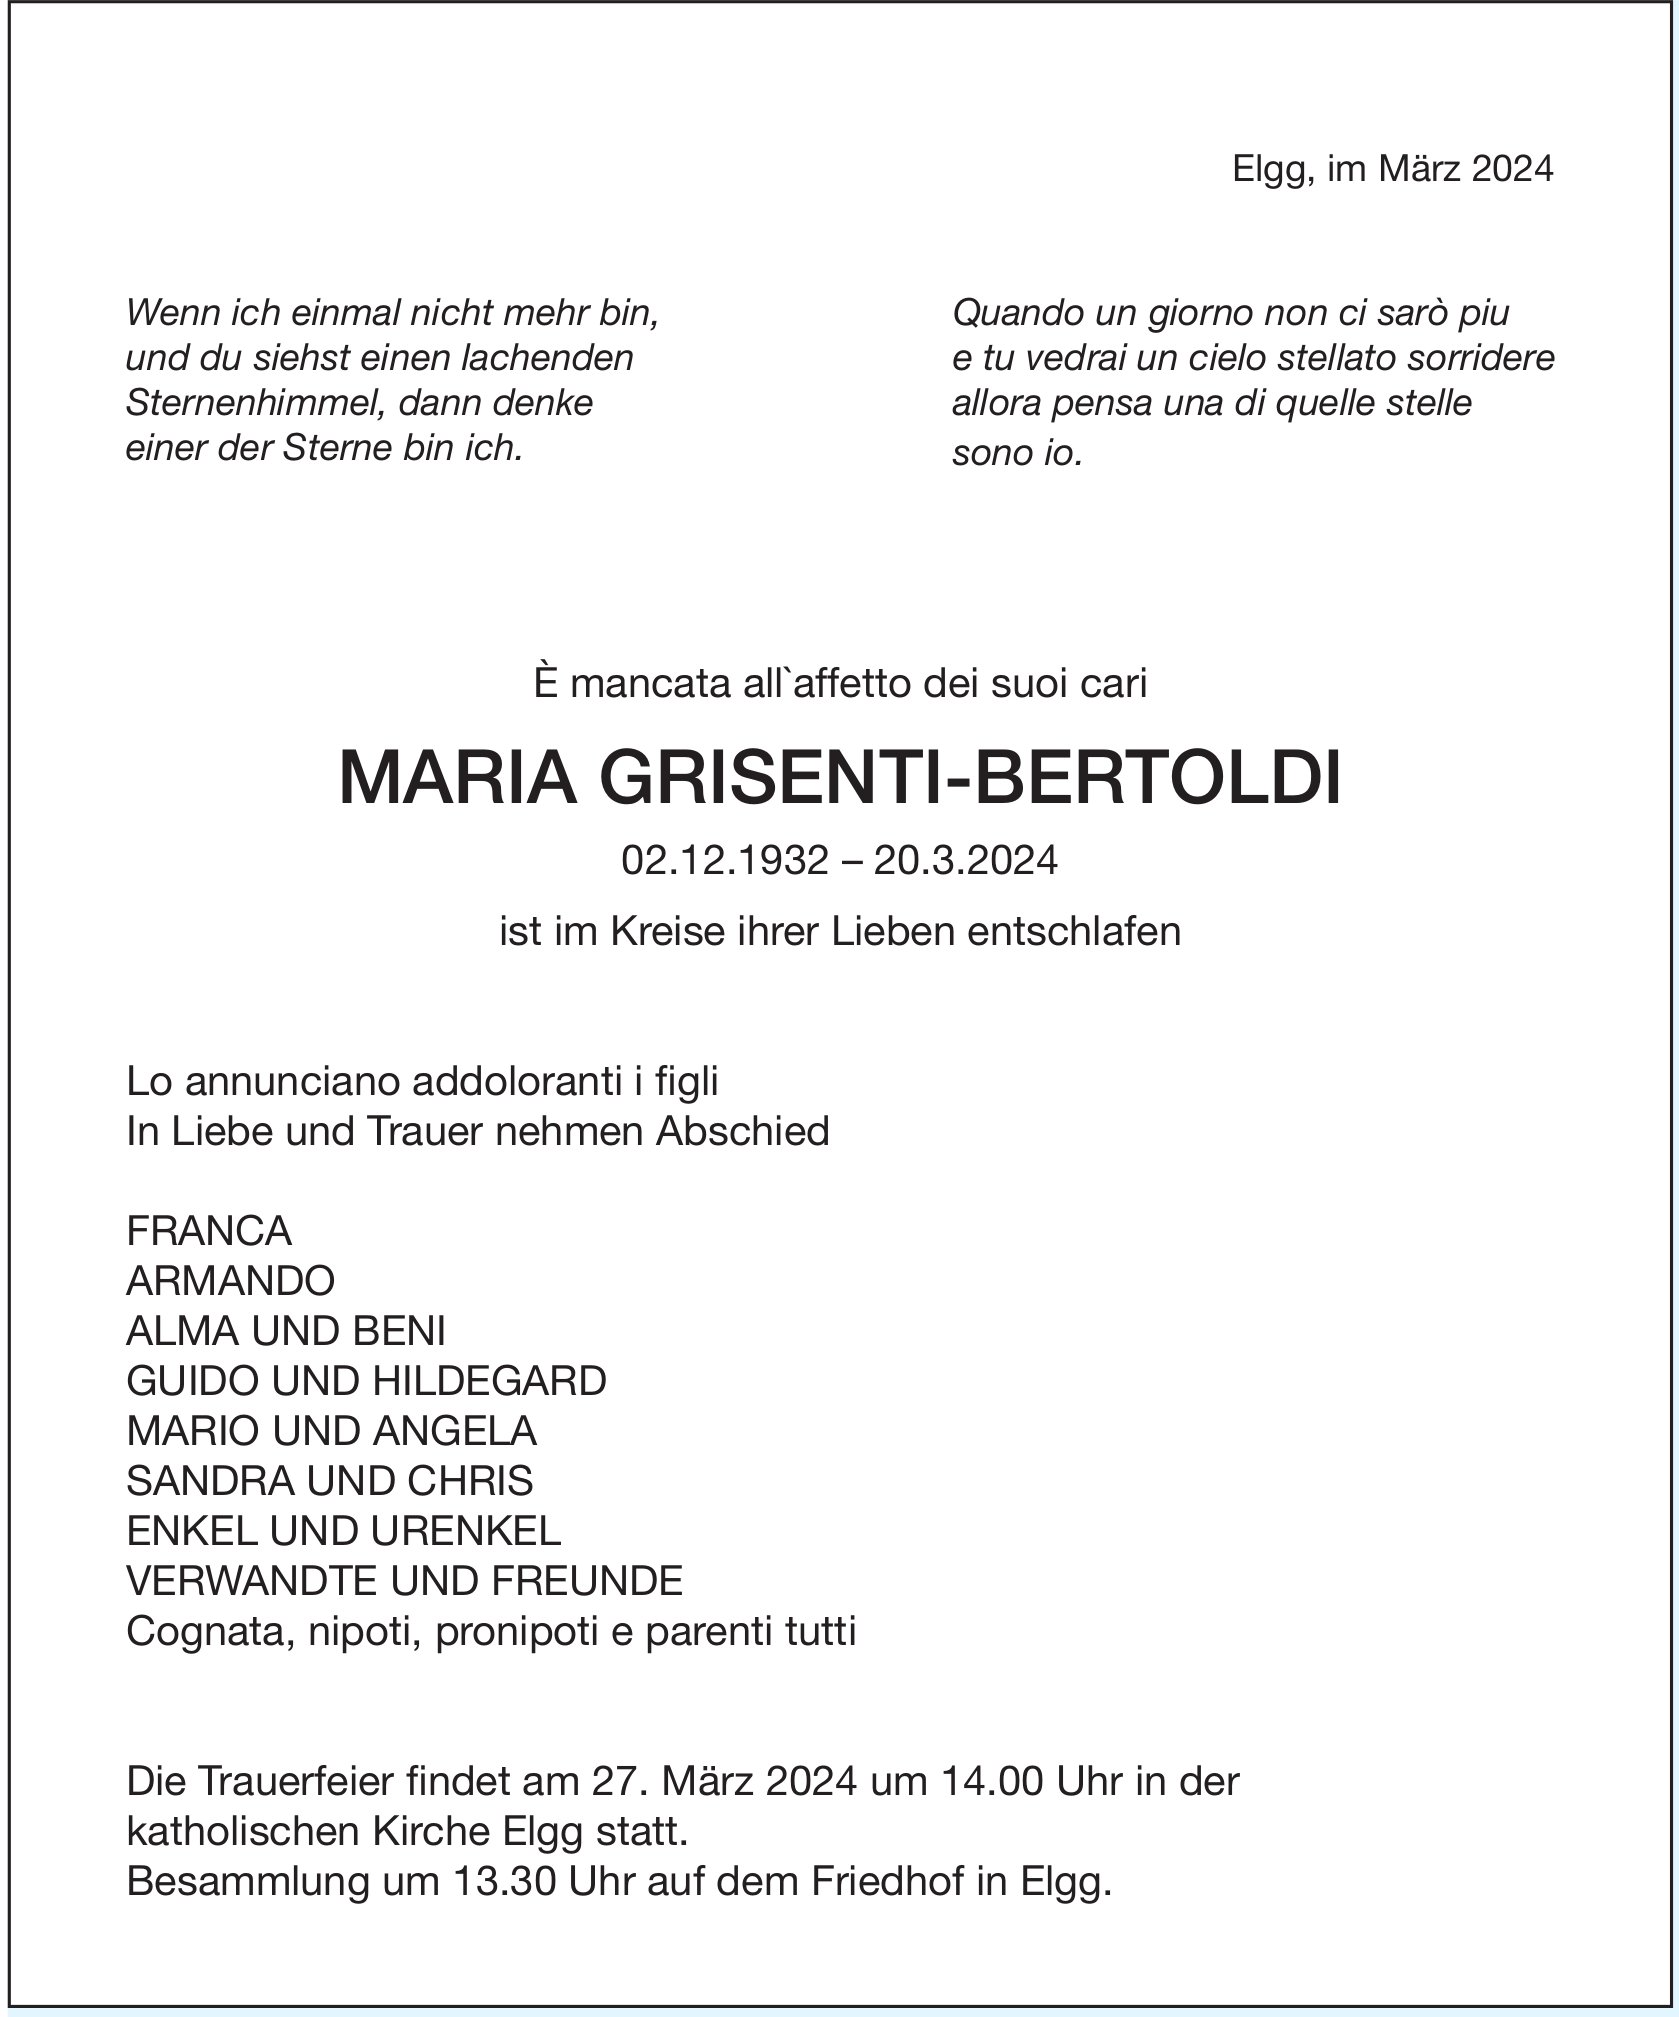 Grisenti-Bertoldi Maria, März 2024 / TA